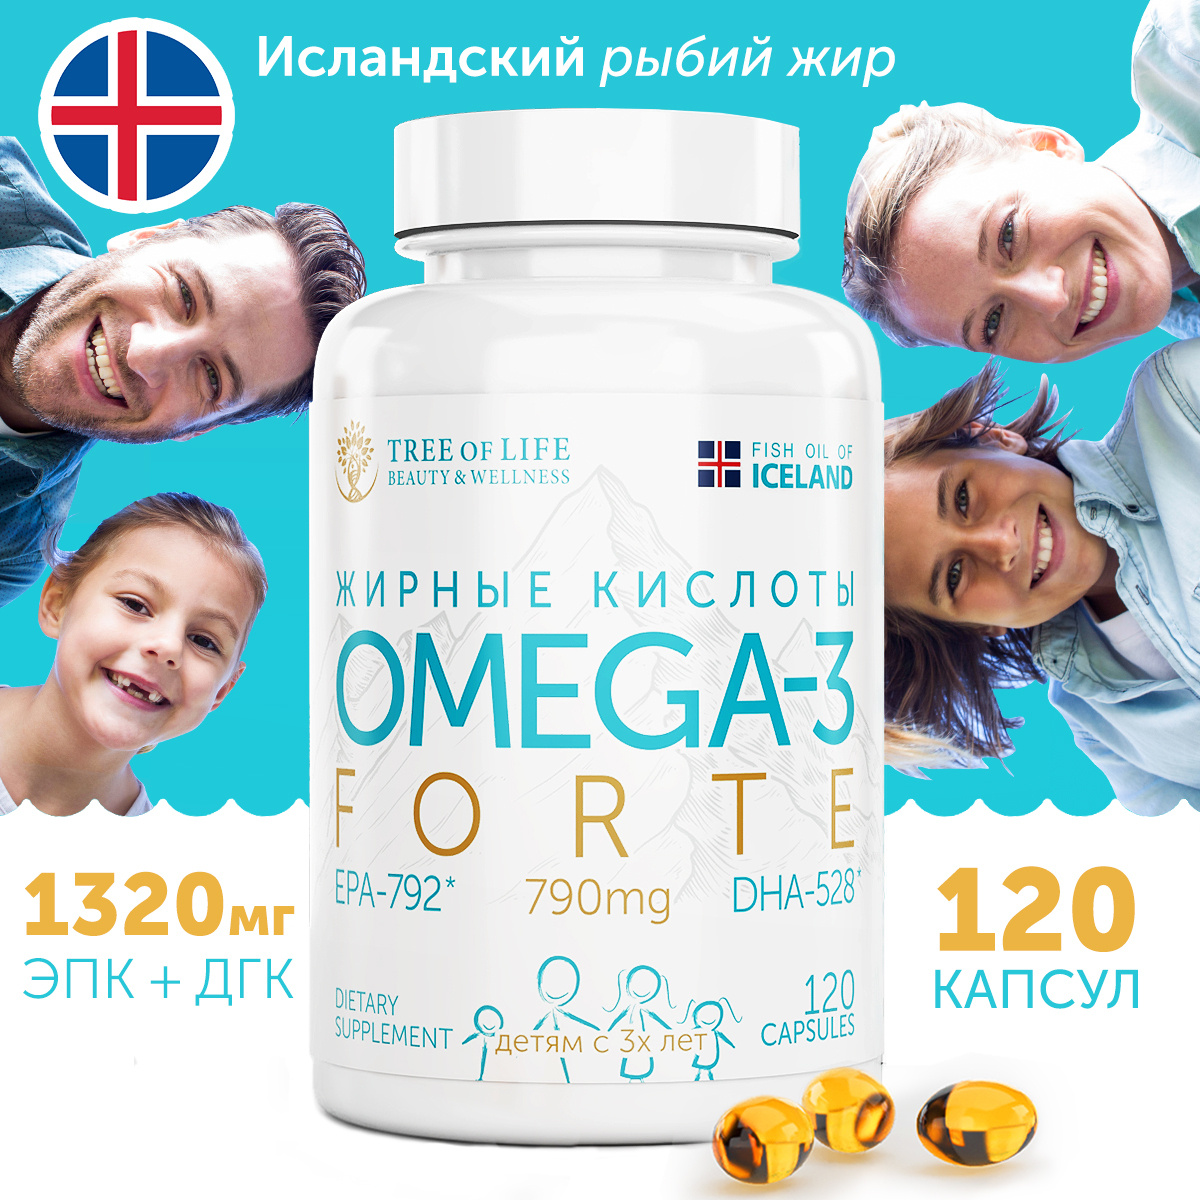 Tree of Life Омега 3 120 капсул, Рыбий жир, Omega 3, Омега3, Омега-3, Omega-3, БАДы и витамины omega #1